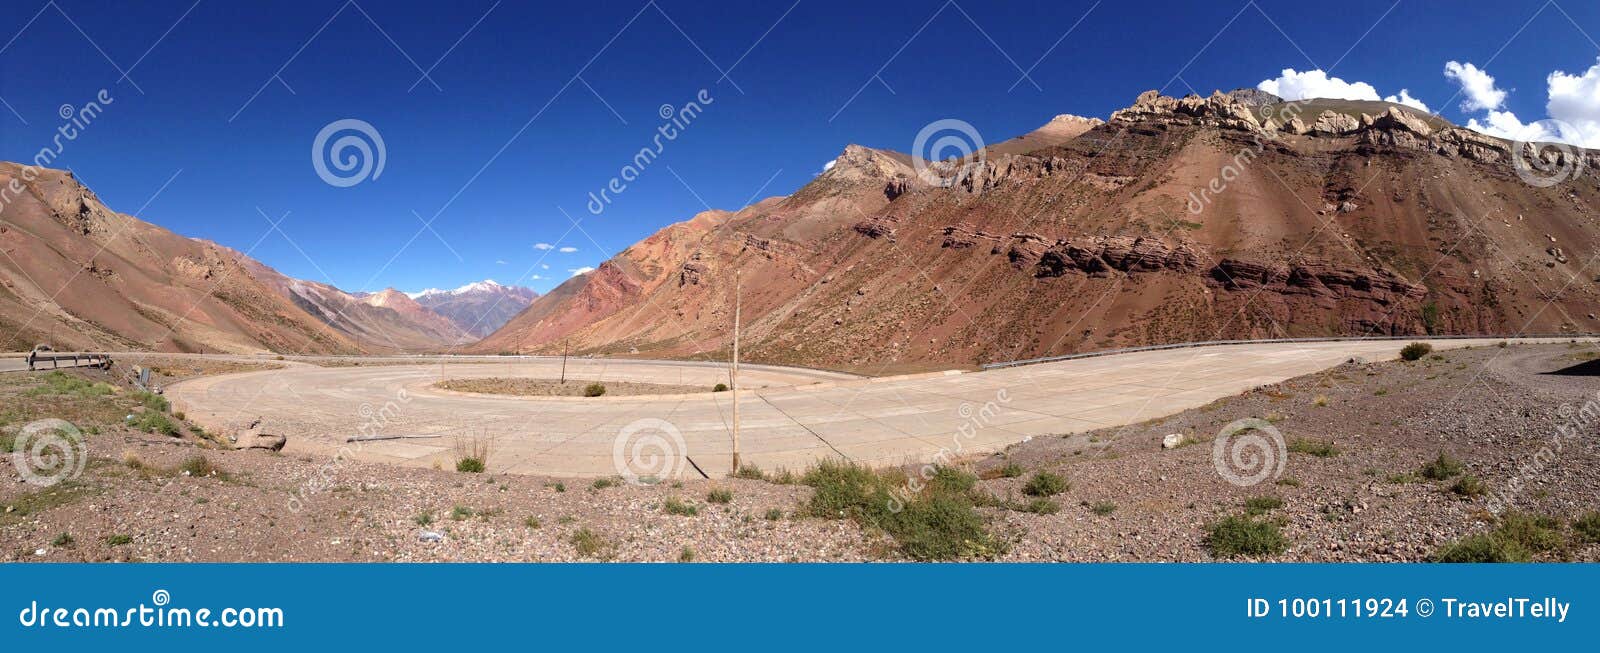 road argentina side